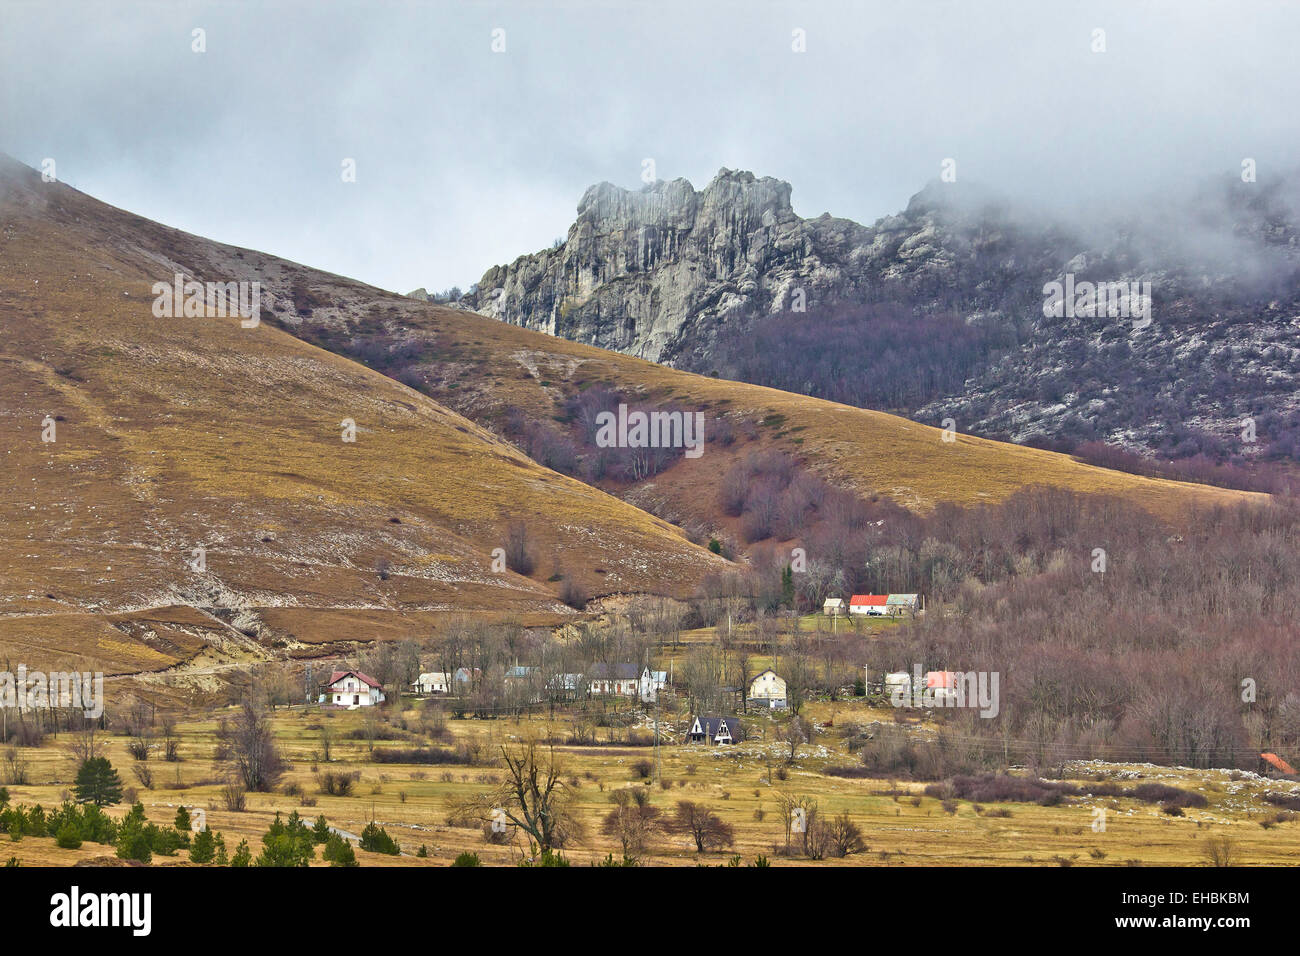 Velebit mountain village in fog Stock Photo